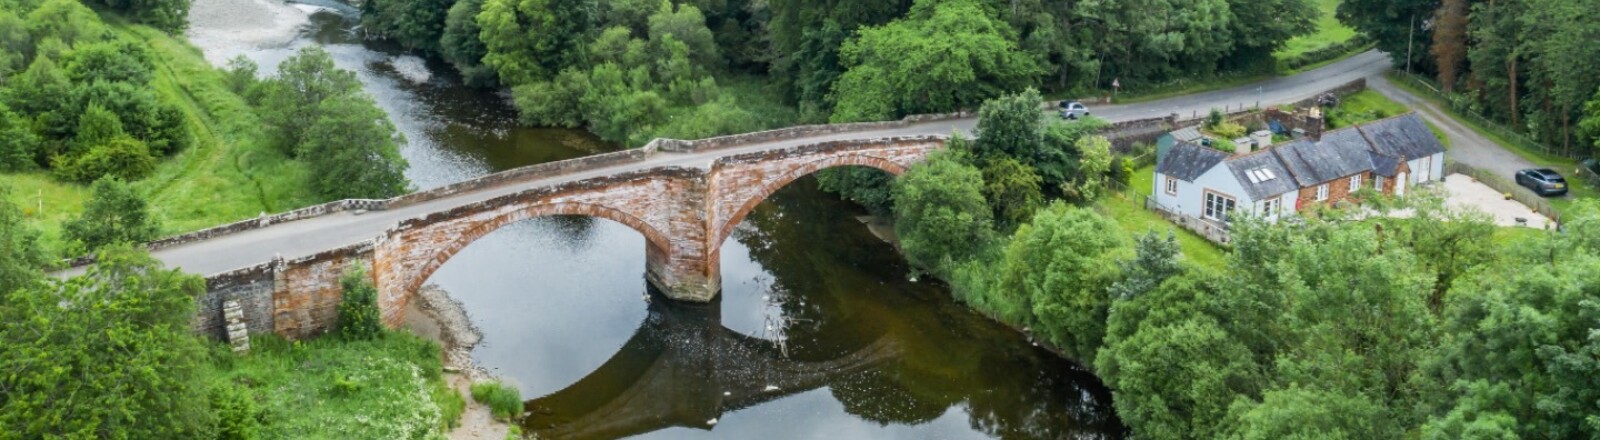 Luftaufnahme der Brücke in Thornhill.